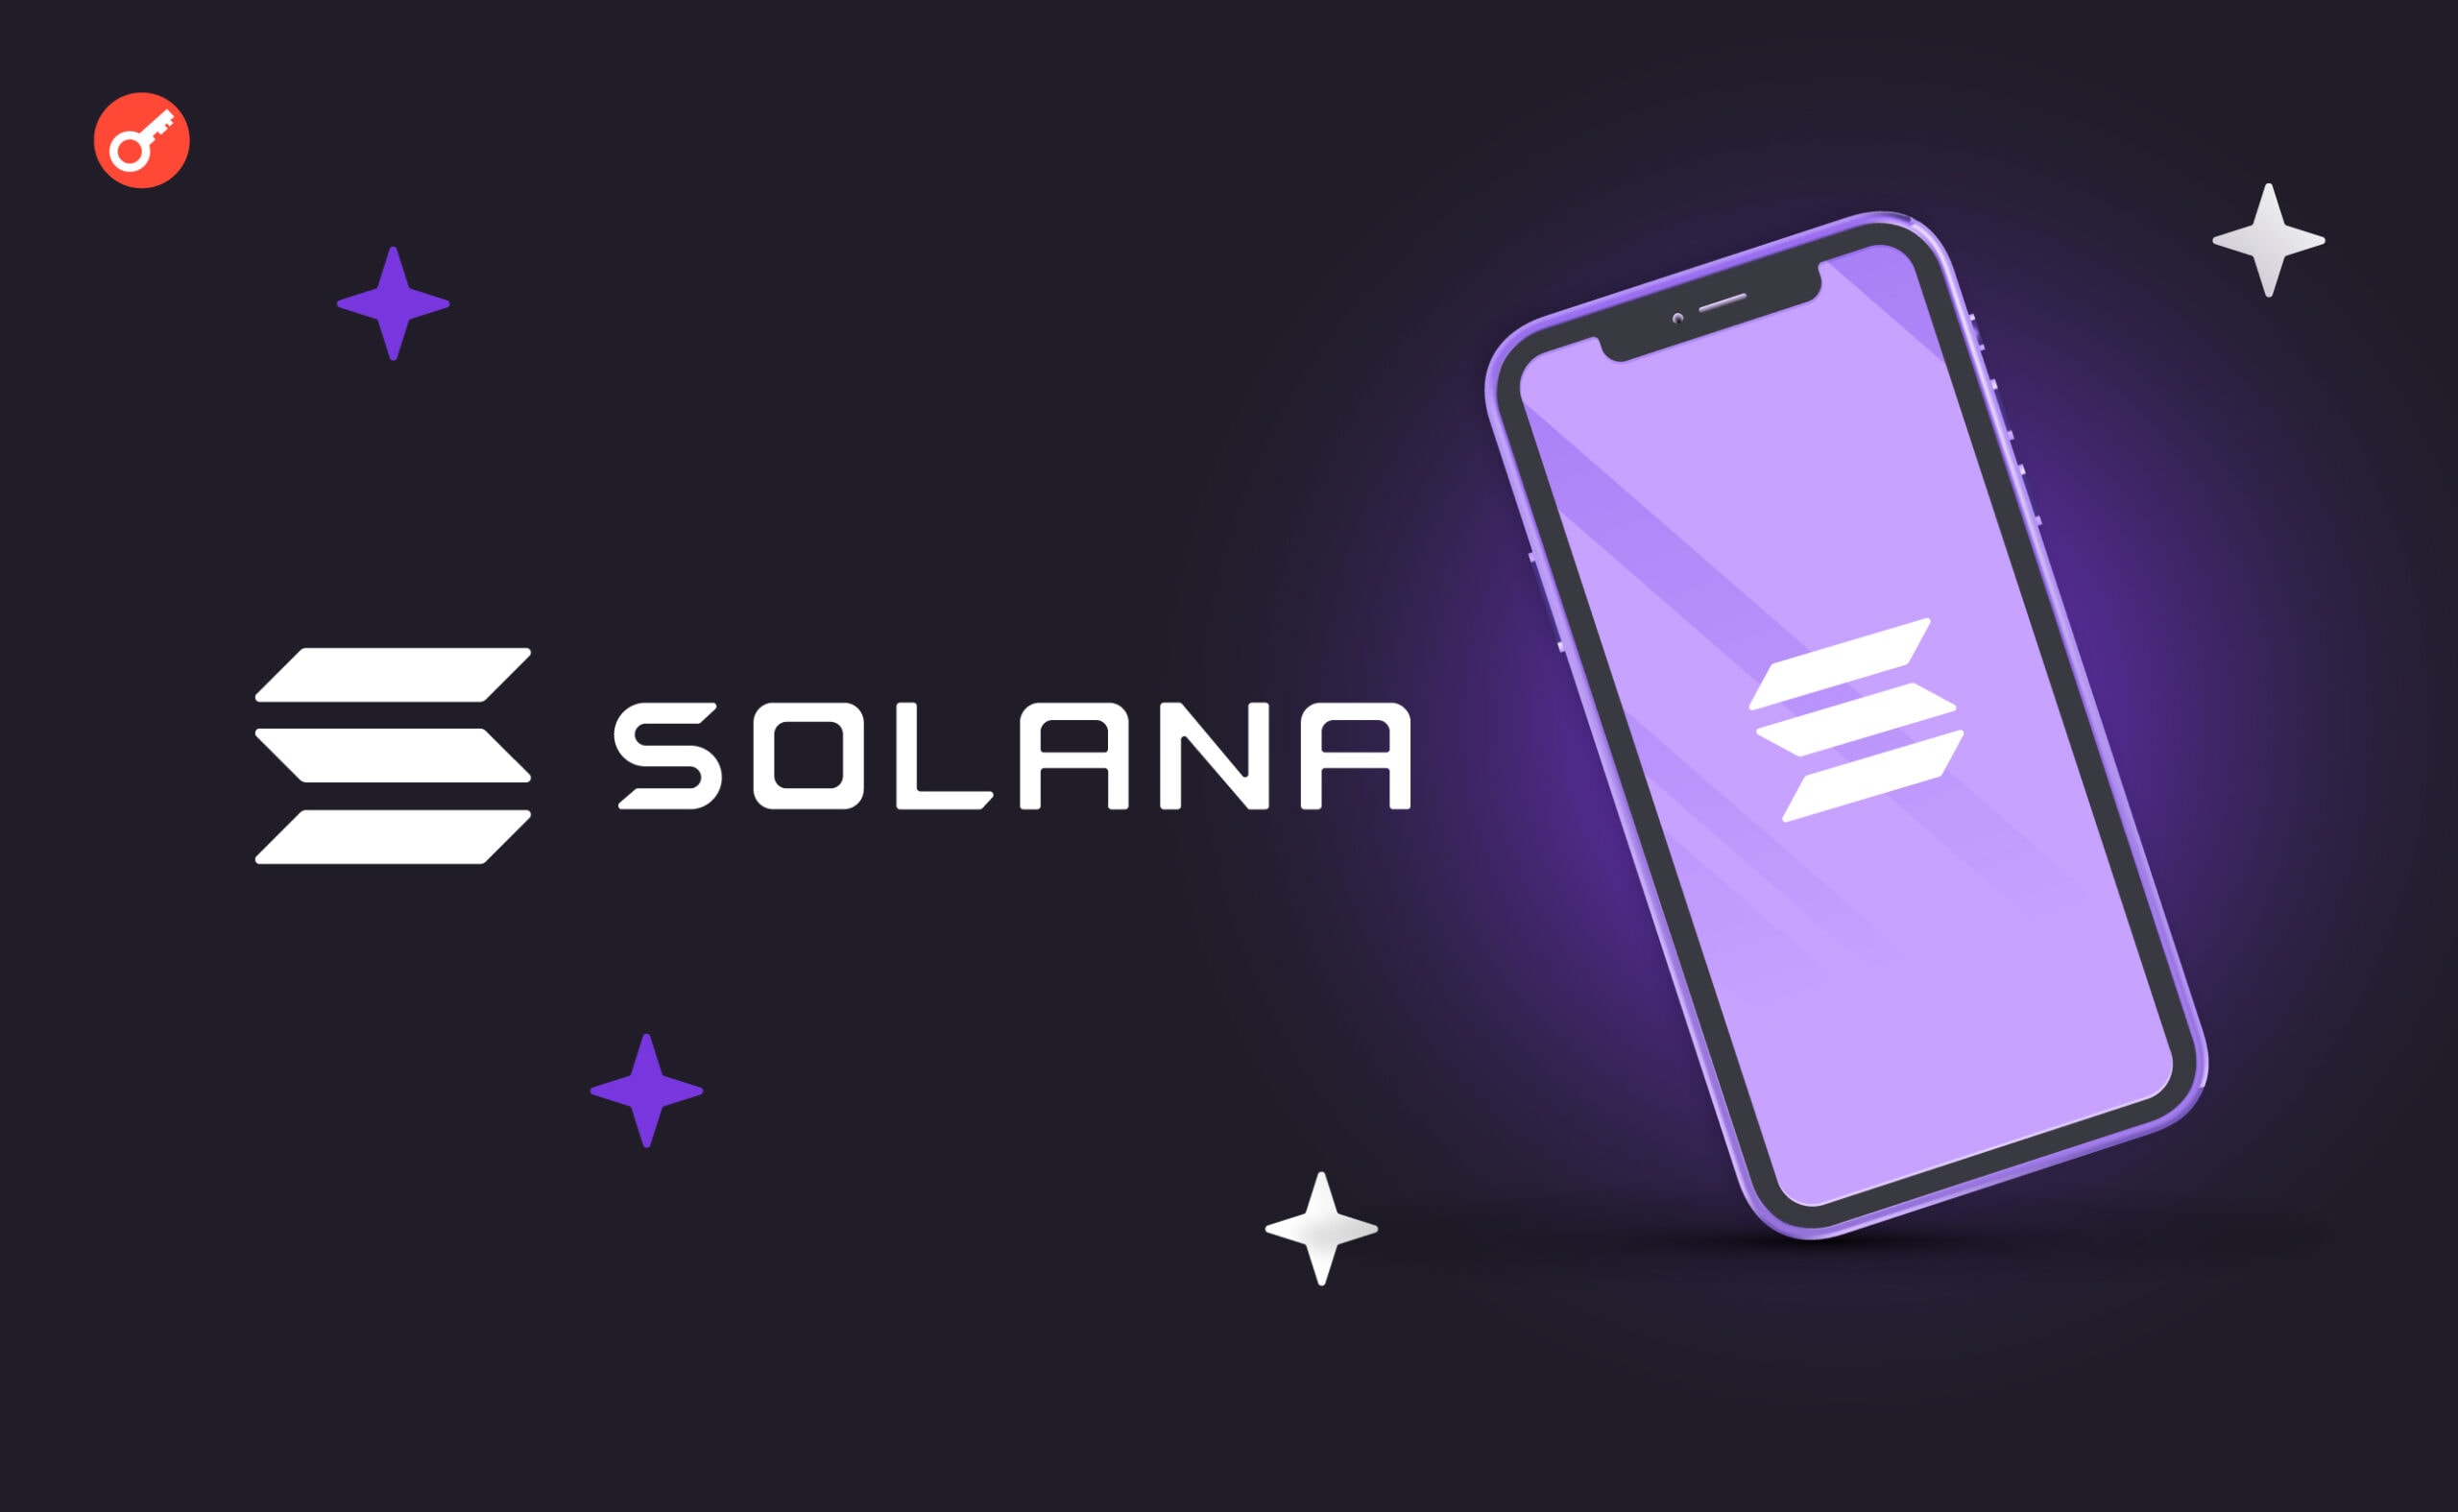 Solana Mobile повідомила про проблеми з поставками смартфонів Saga. Головний колаж новини.